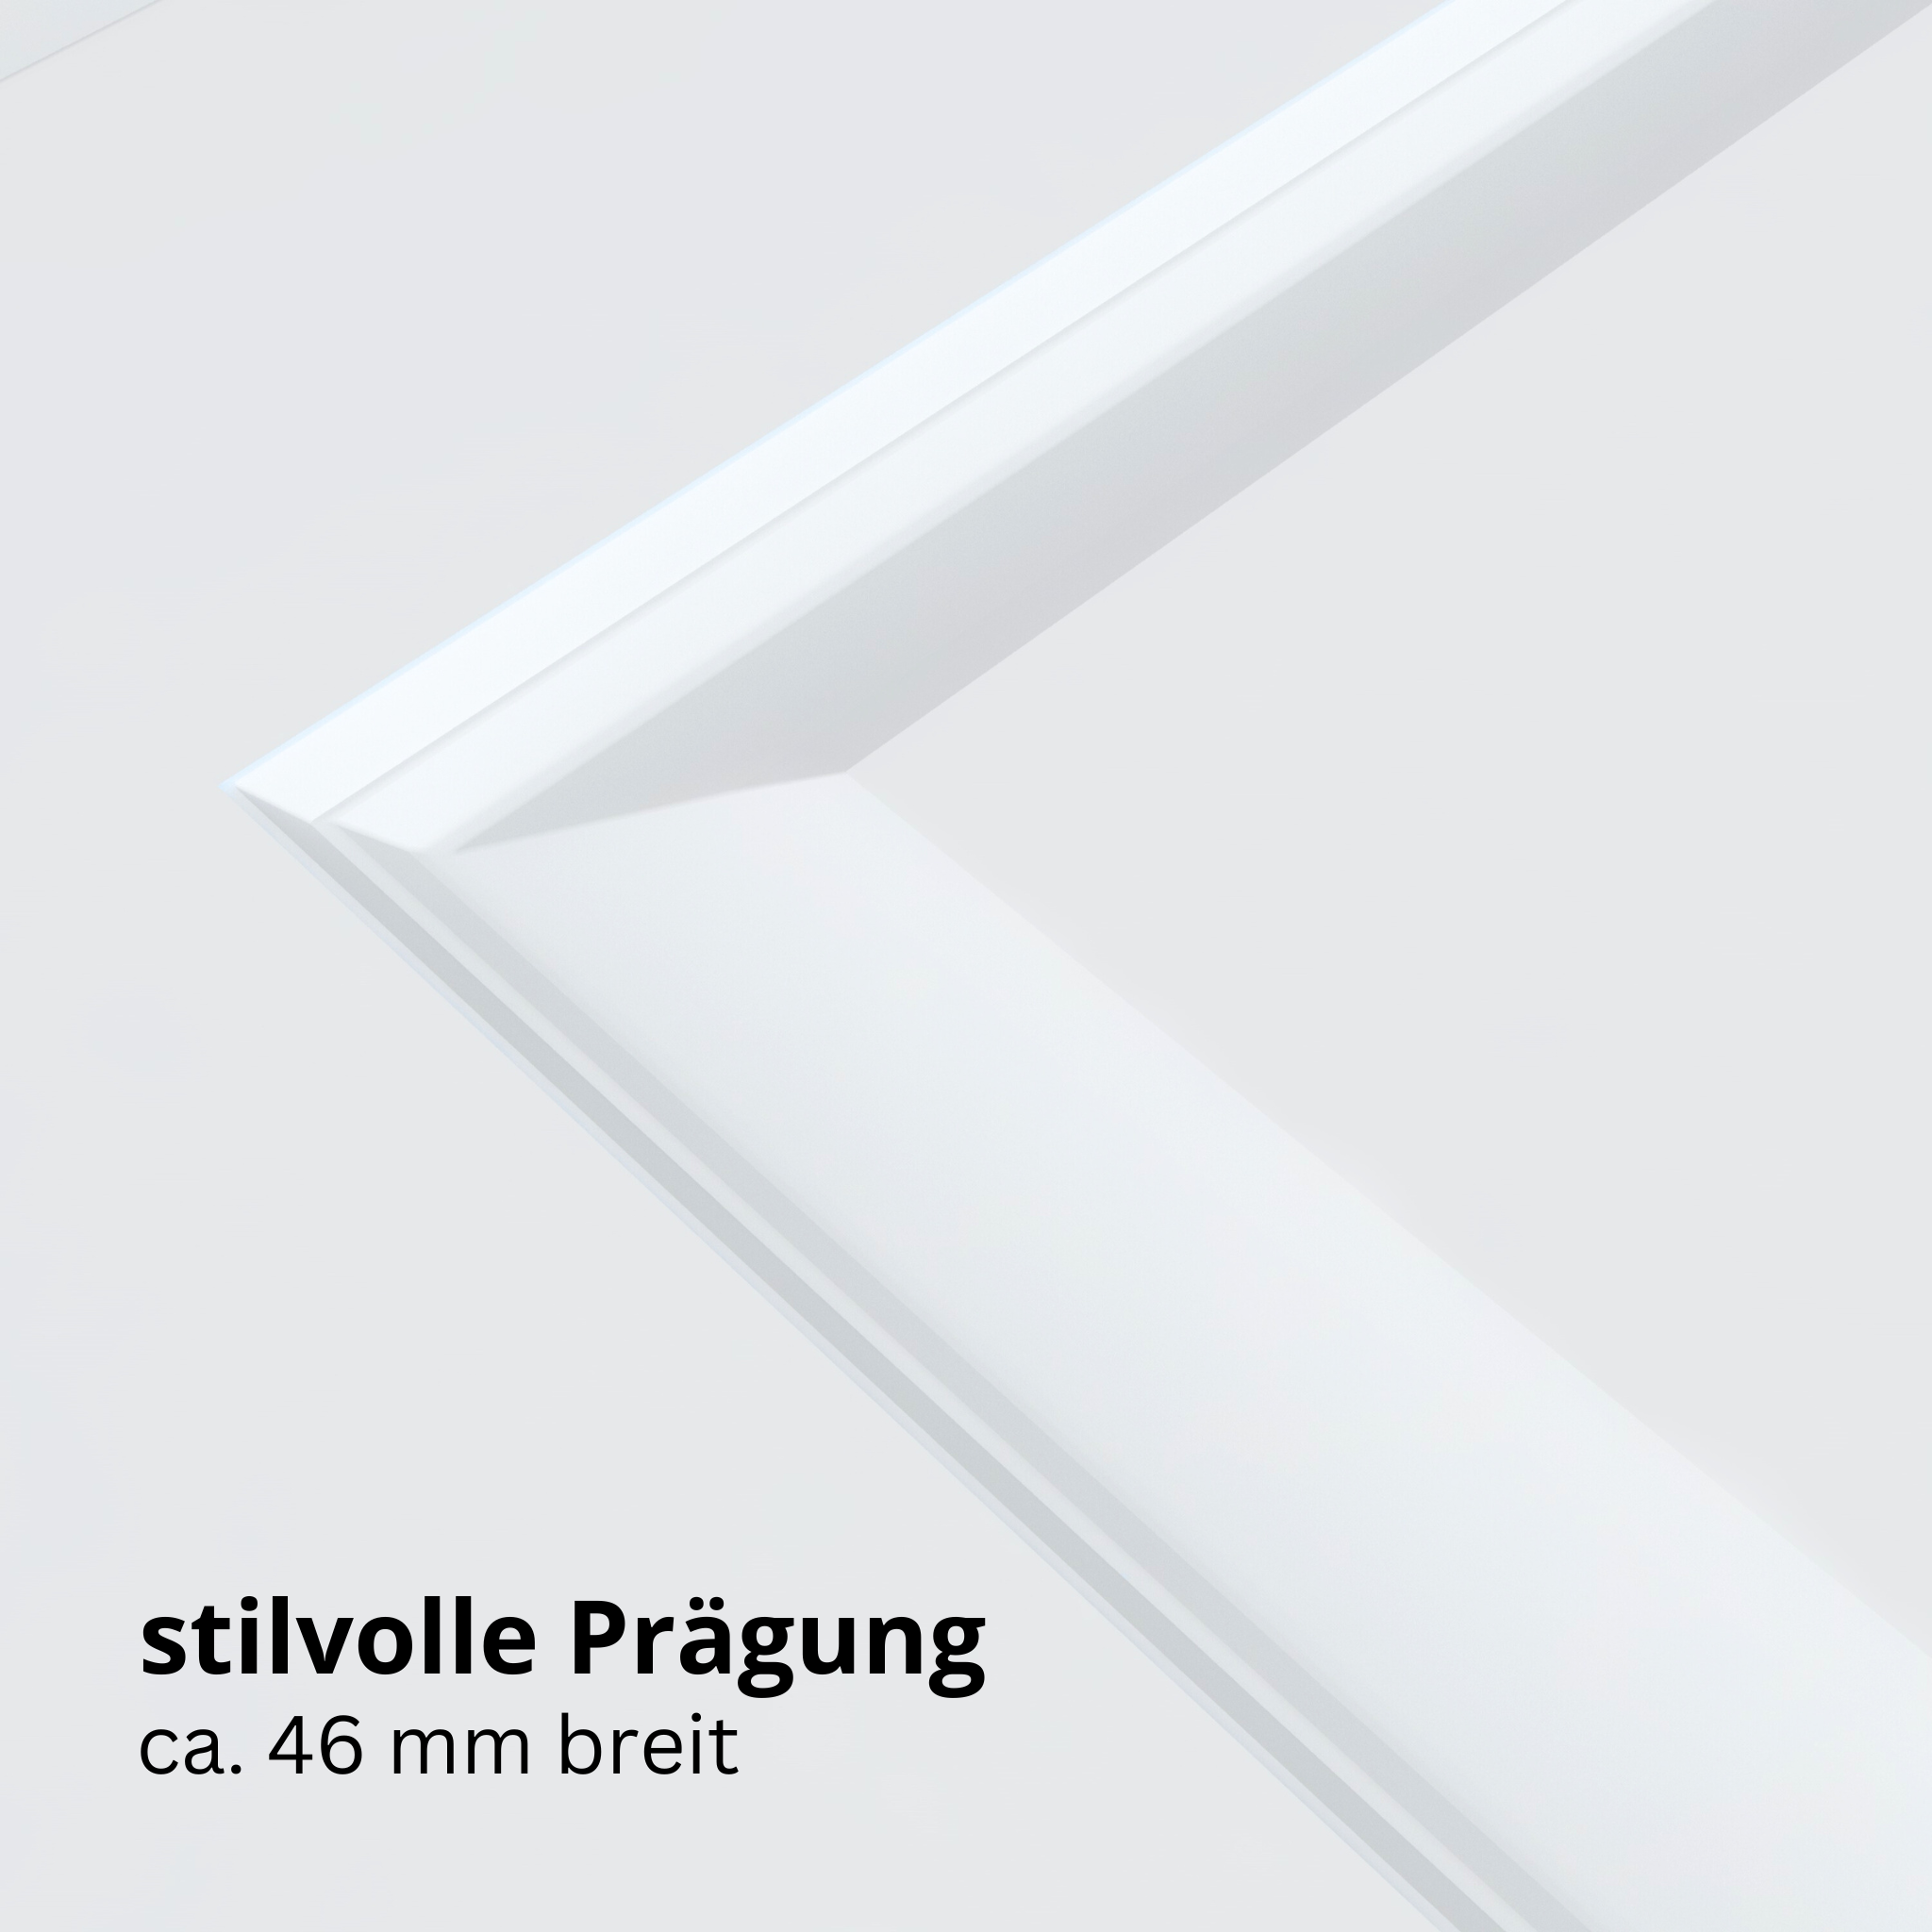 Wohnungseingangstür mit Zarge brillant-weiß 4 Kassetten Designkante SK2 / KK3 - Modell Stiltür K43